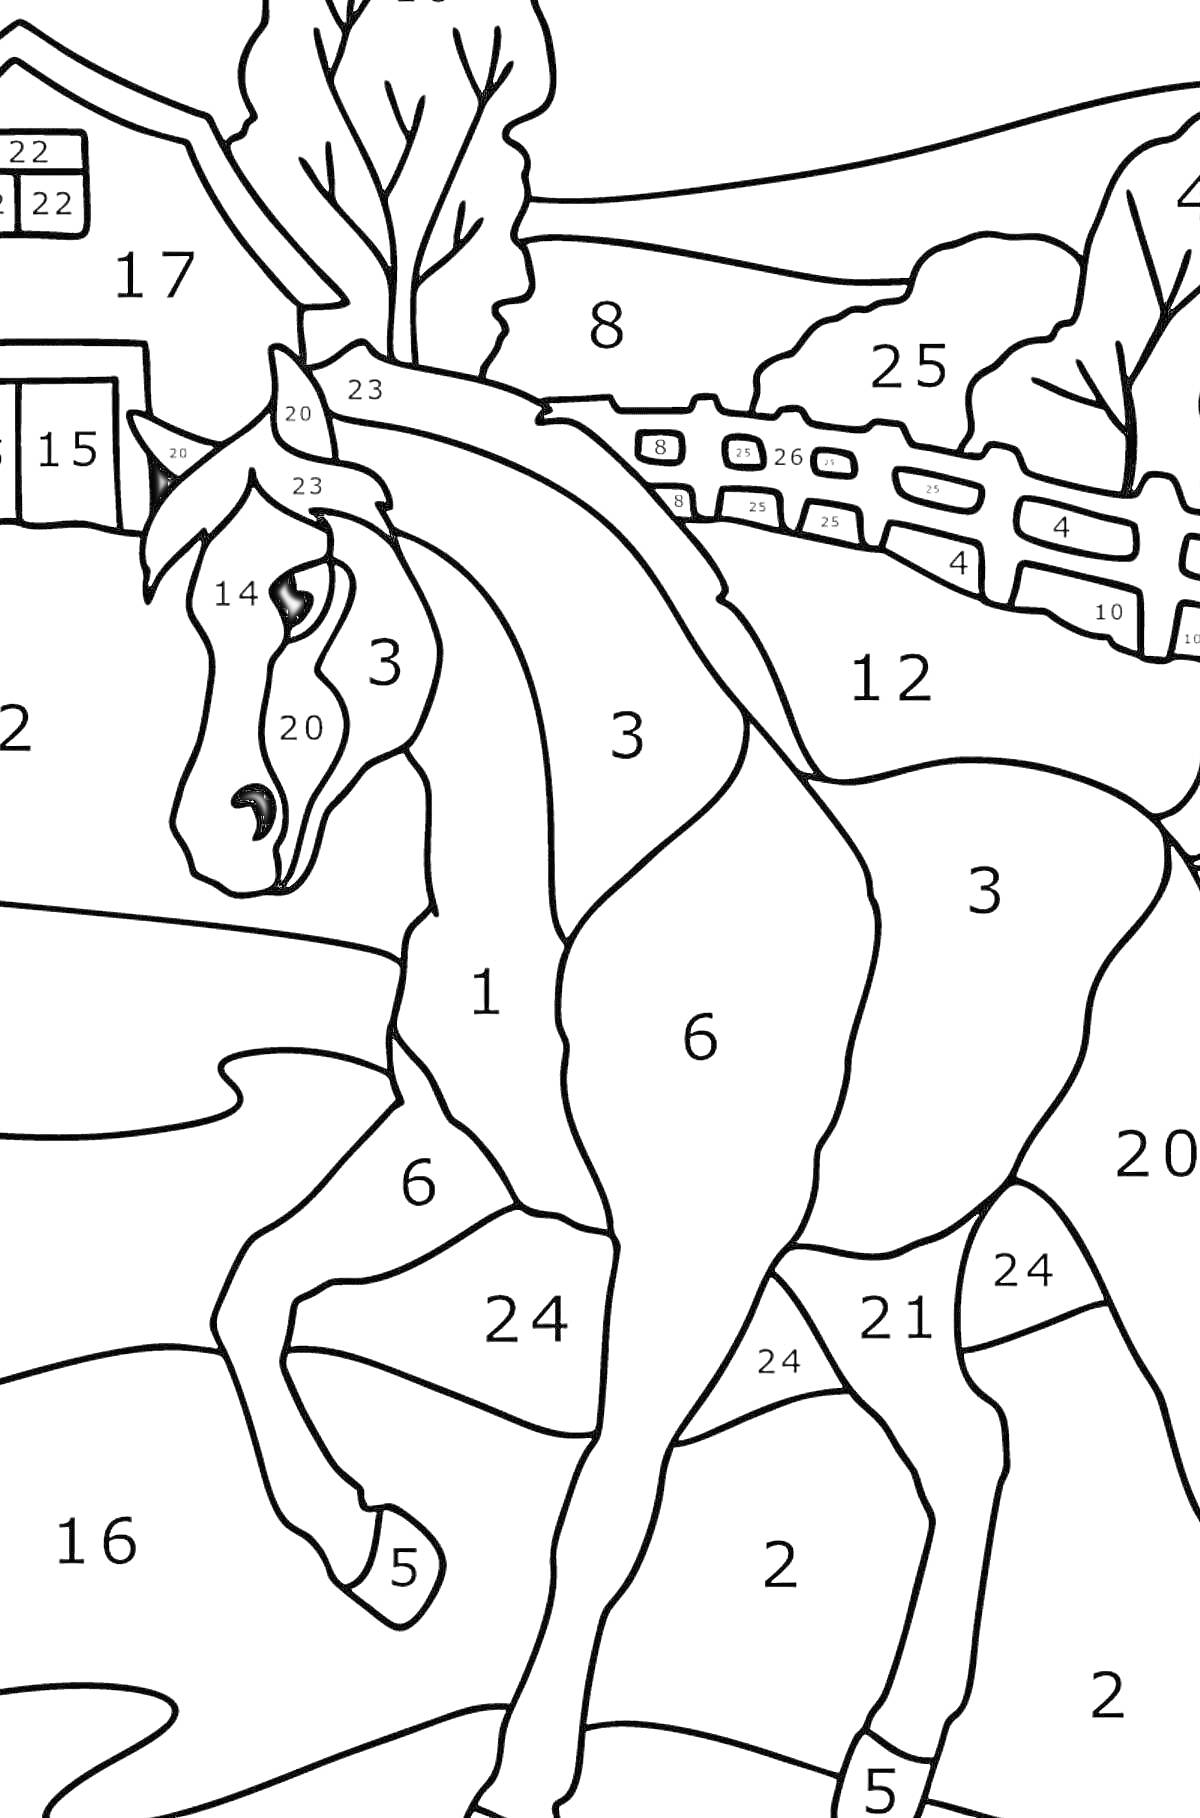 Раскраска Раскраска по номерам с изображением лошади на ферме с деревьями, забором, домом и холмистой местностью